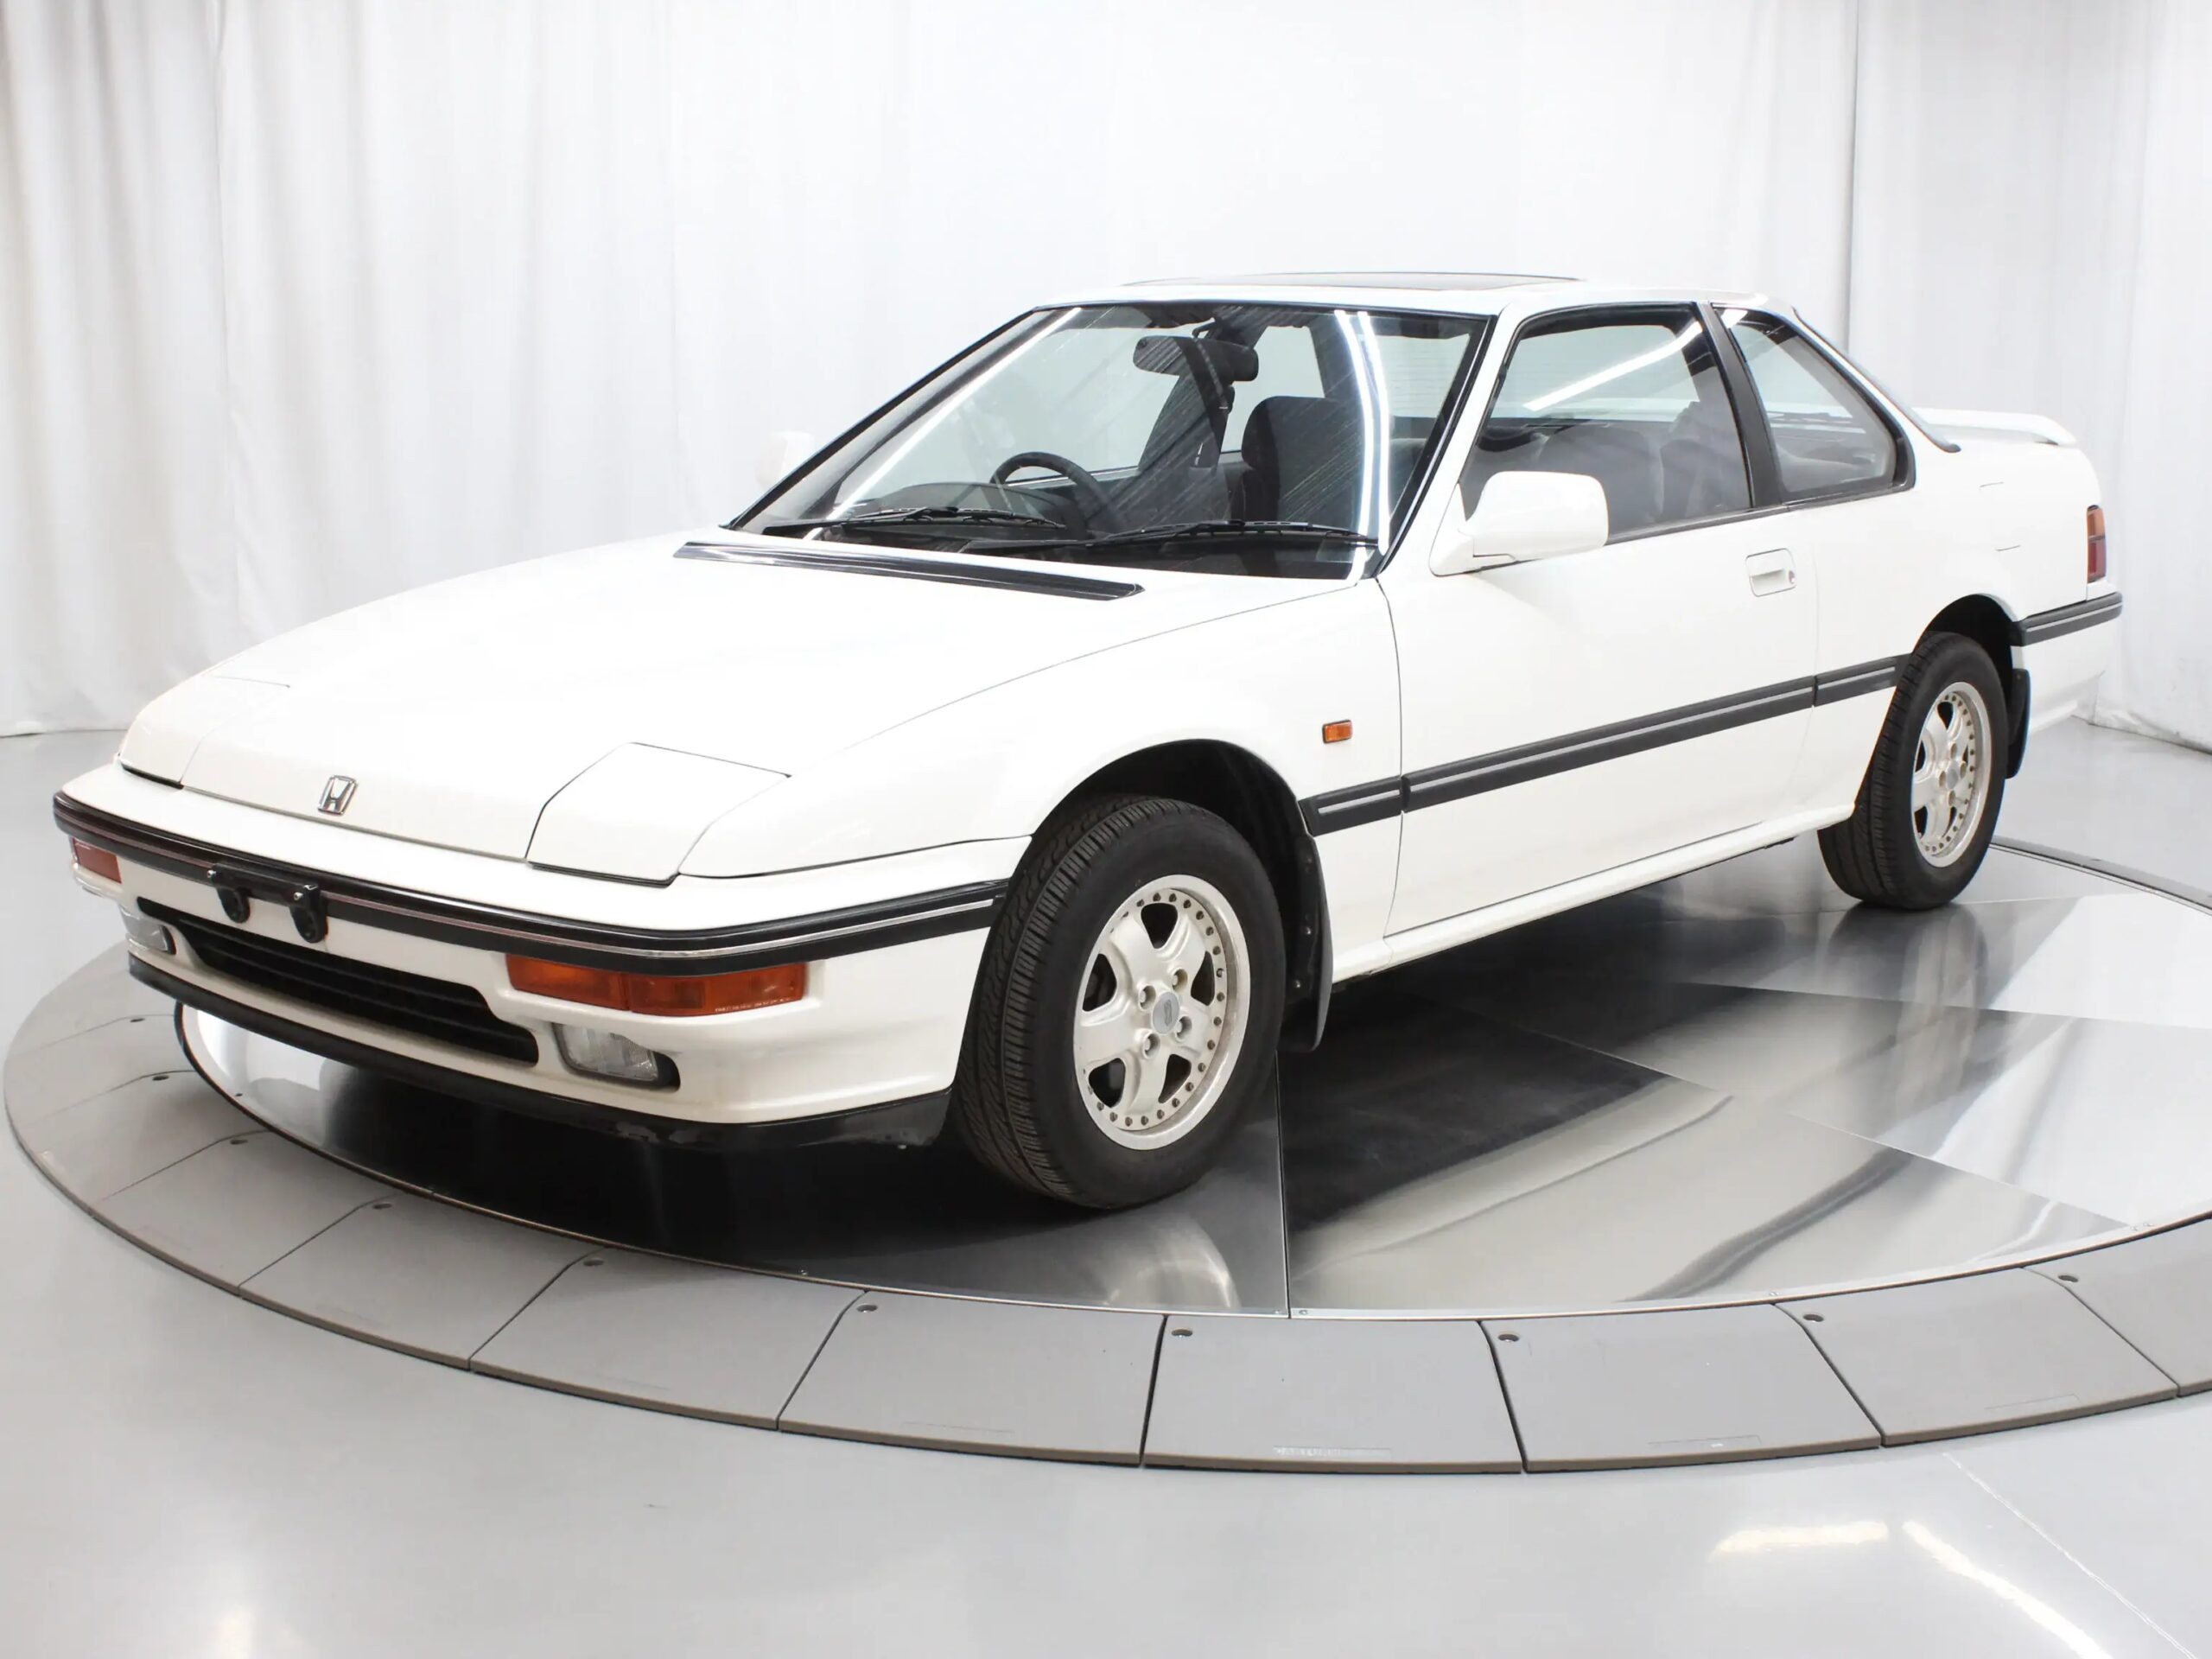 For Sale: 1987 Honda Prelude Si Coupe $18, 777 USD Estimated 2560x1920